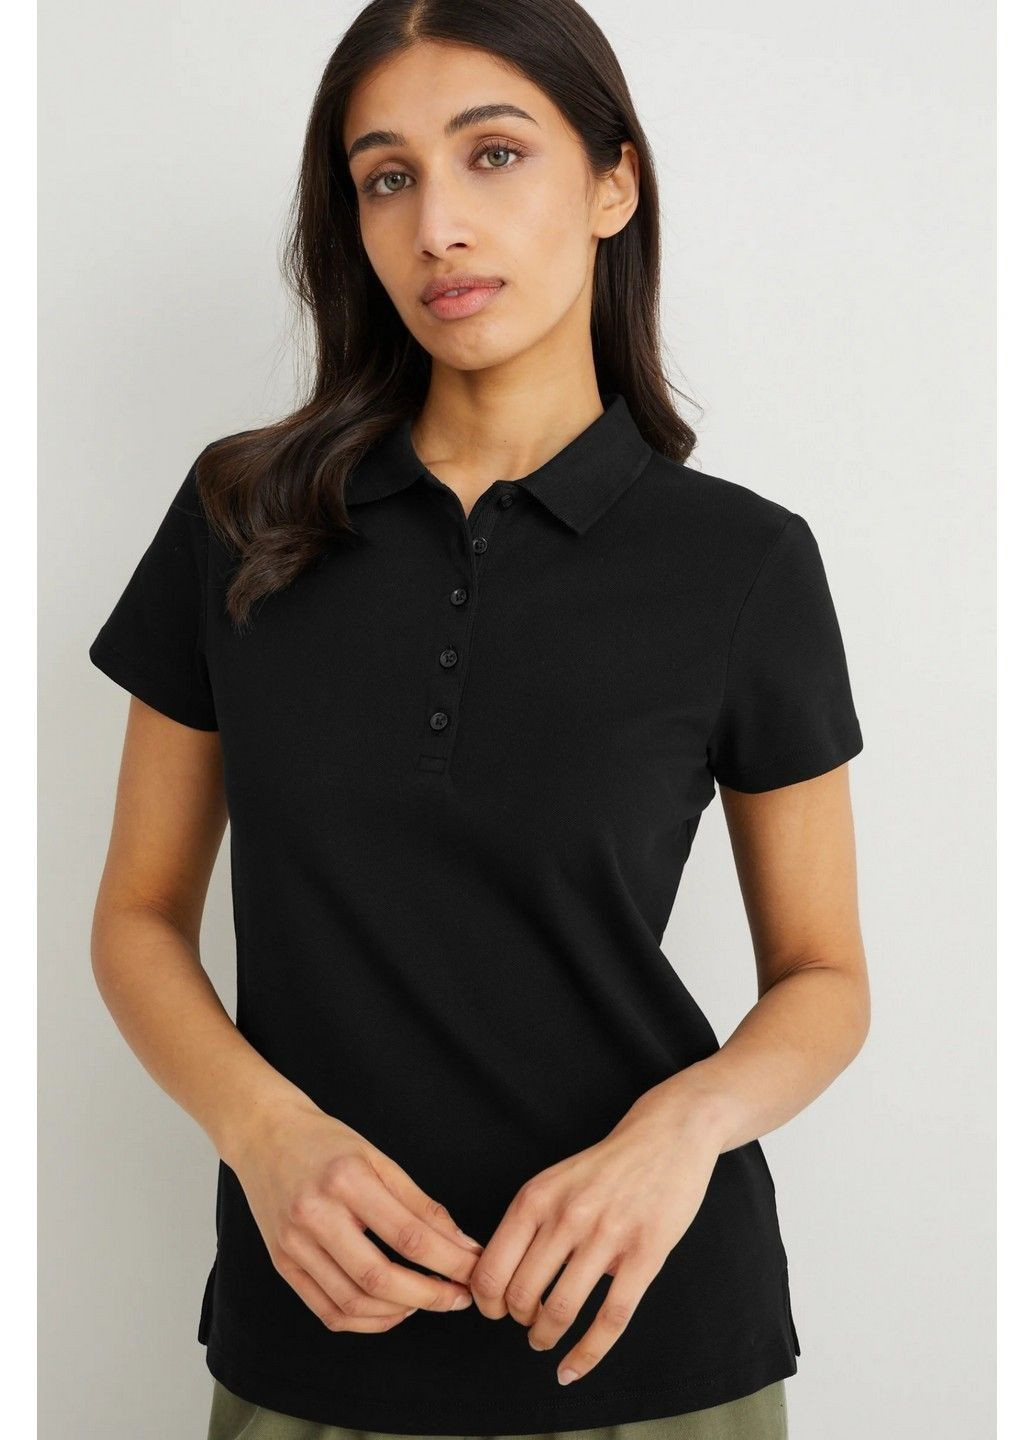 Черная женская футболка-поло с микро-дефектом C&A однотонная